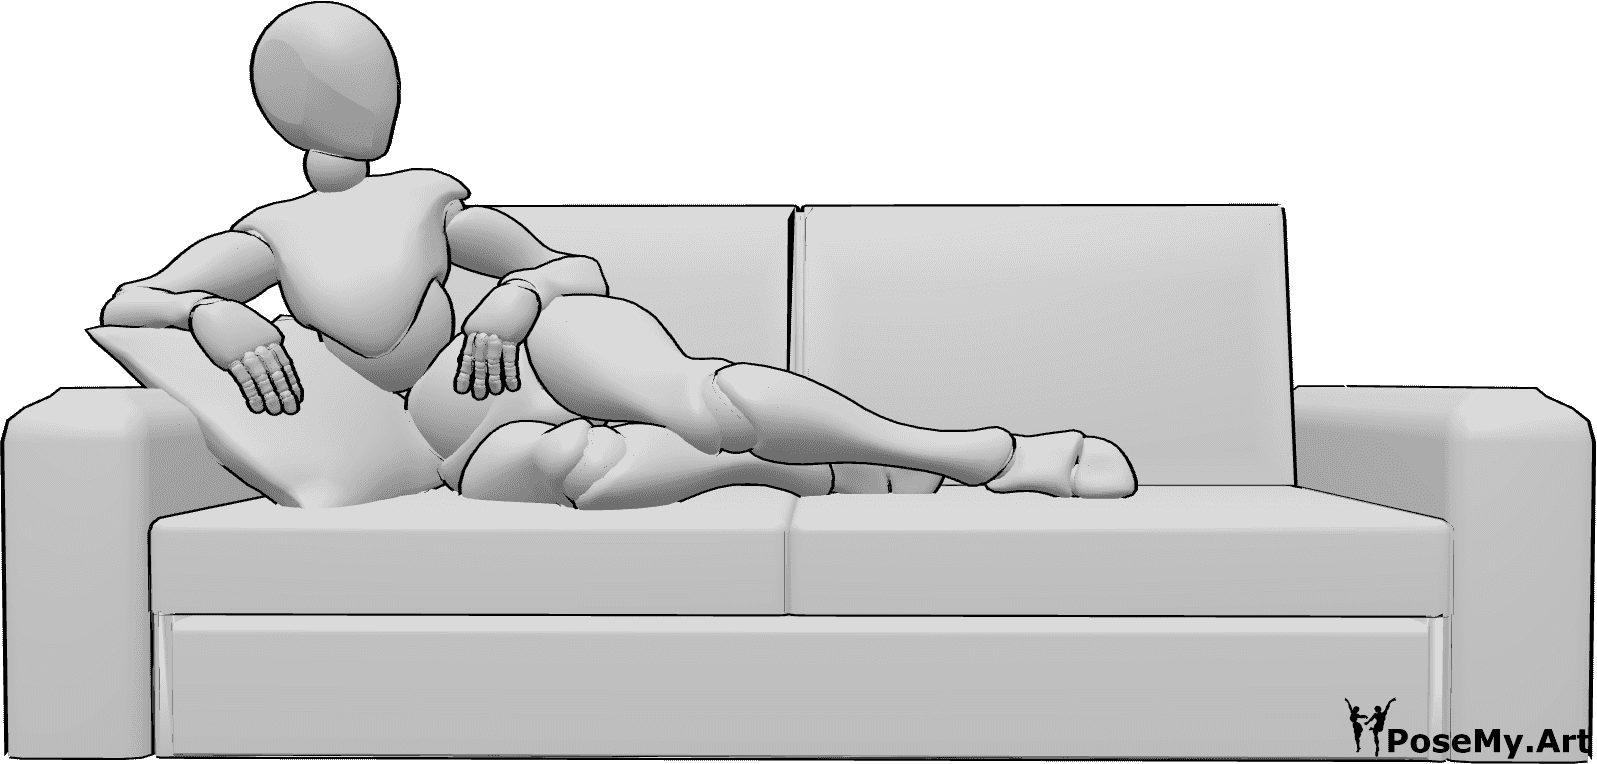 Referencia de poses- Postura cómoda de mujer tumbada - Mujer tumbada cómodamente en el sofá y mirando a la izquierda